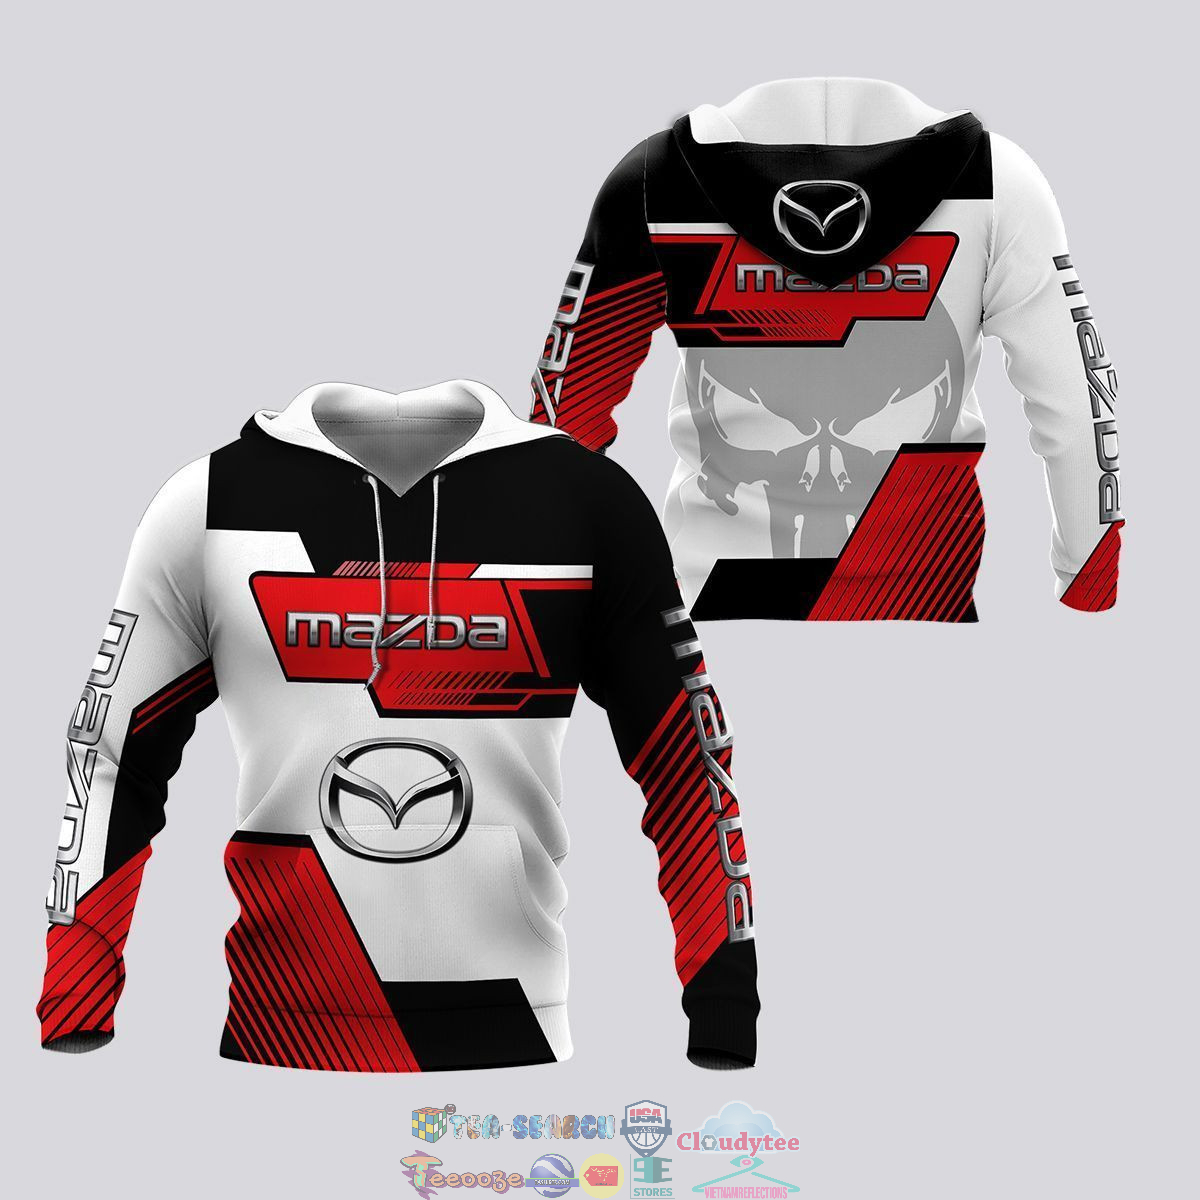 Mazda Skull ver 3 hoodie and t-shirt